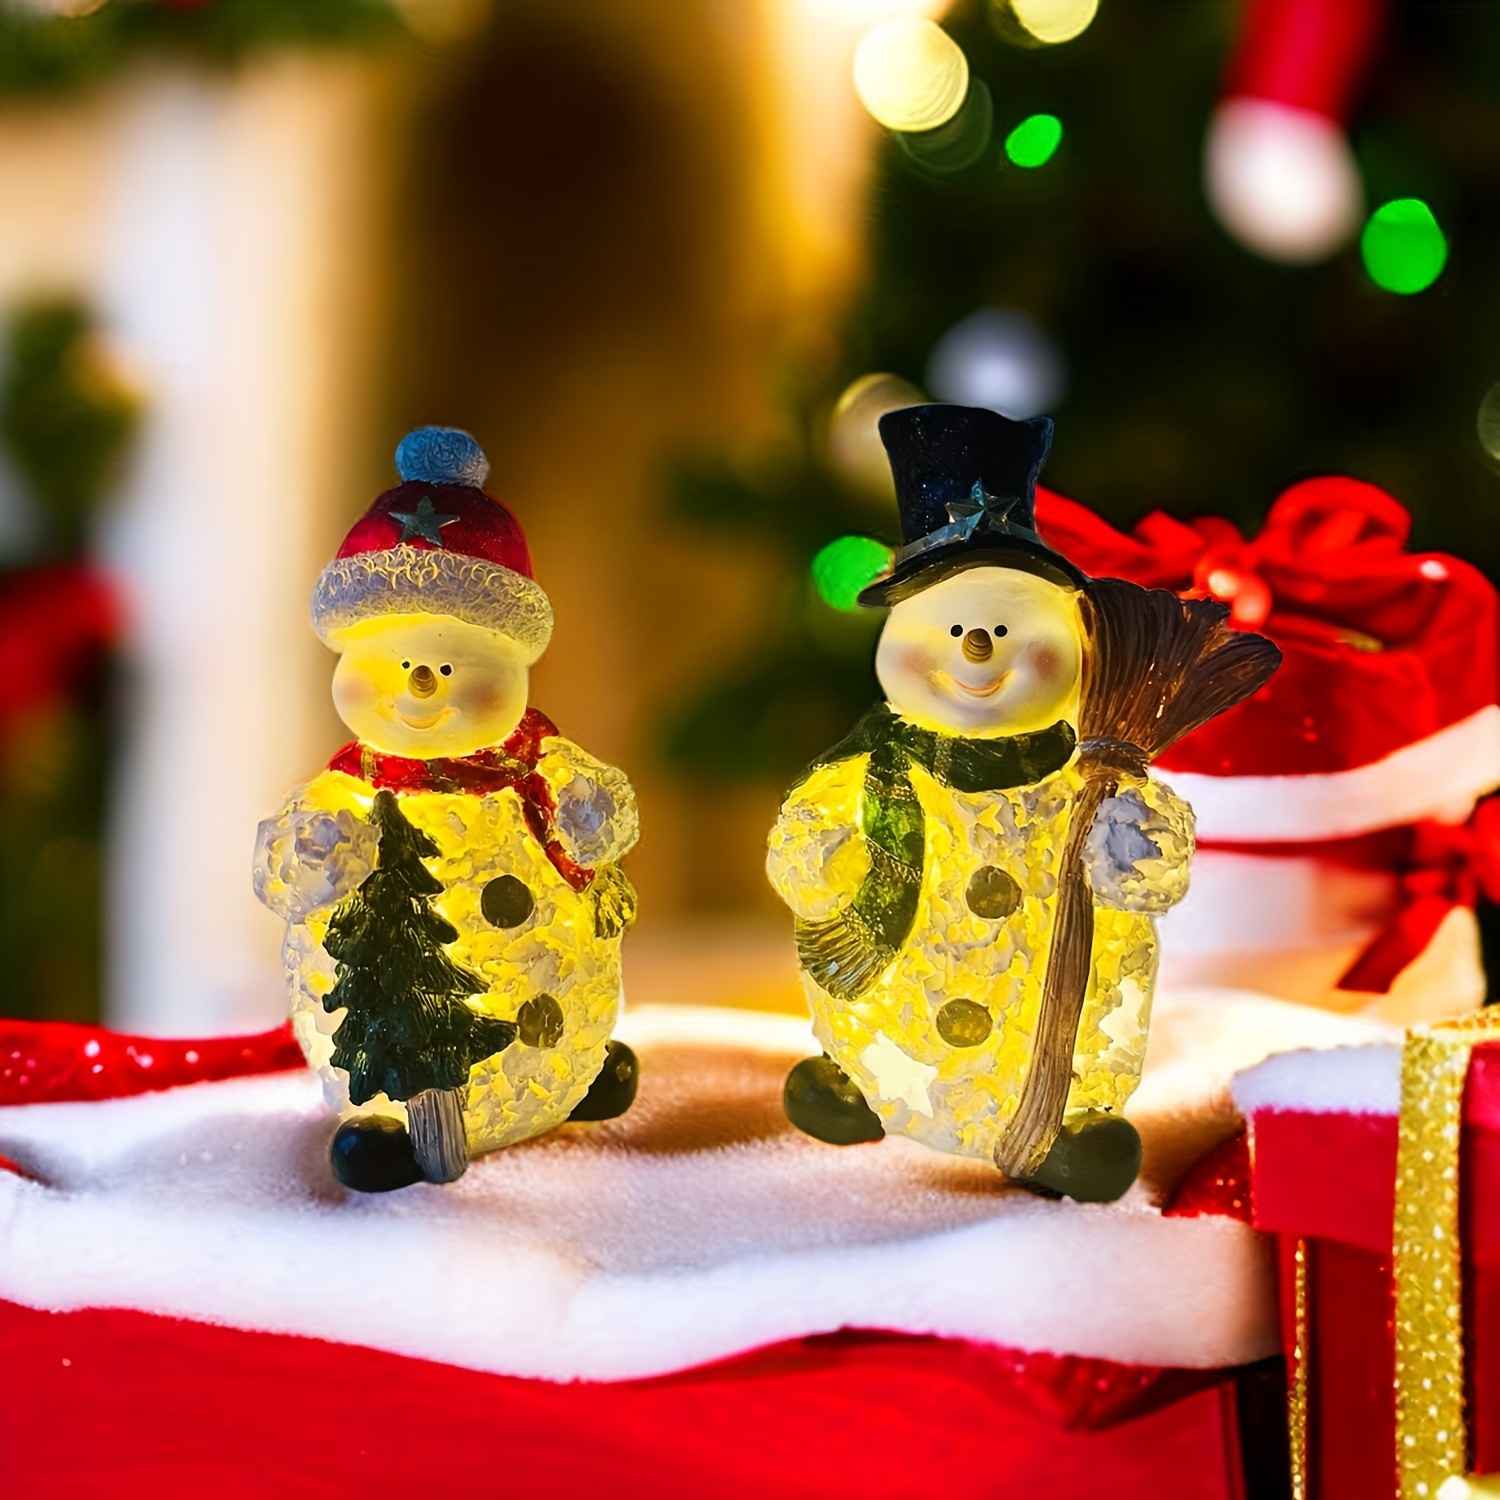 Christmas Mini Snowman Ornament Christmas Resin Igloo - Temu